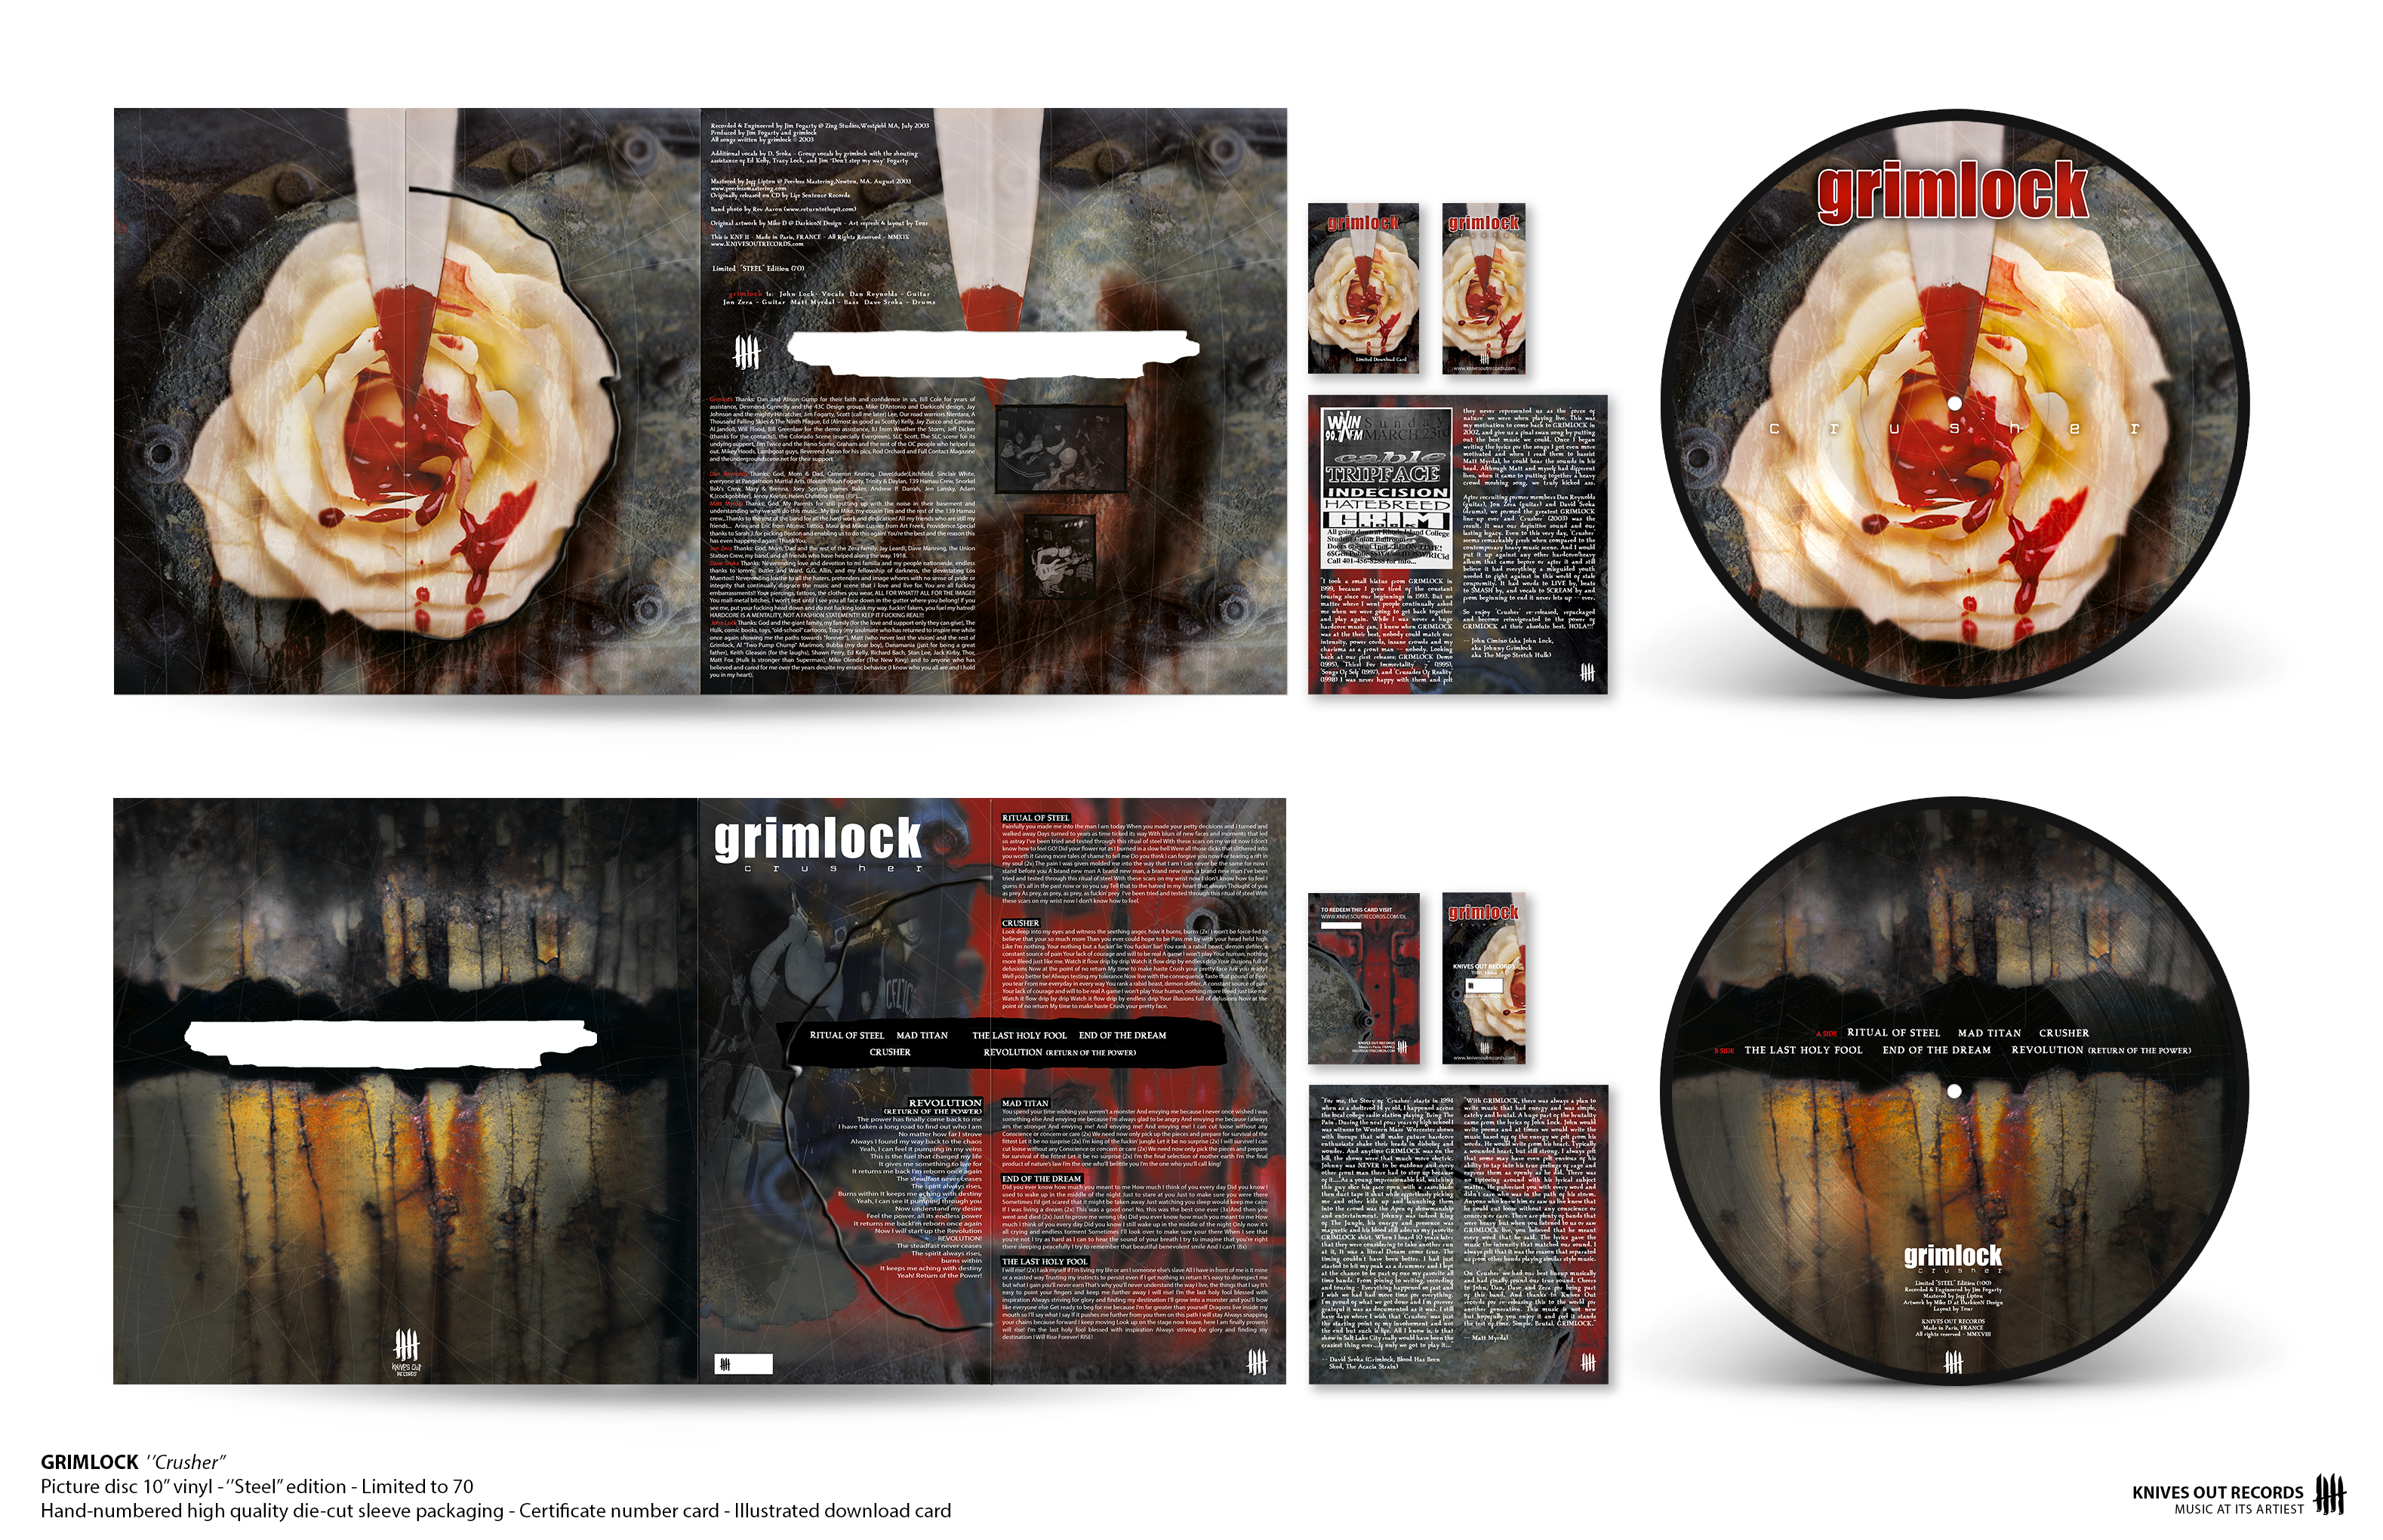 GRIMLOCK Crusher - 10" Picture Disc vinyl - "Steel Edition"